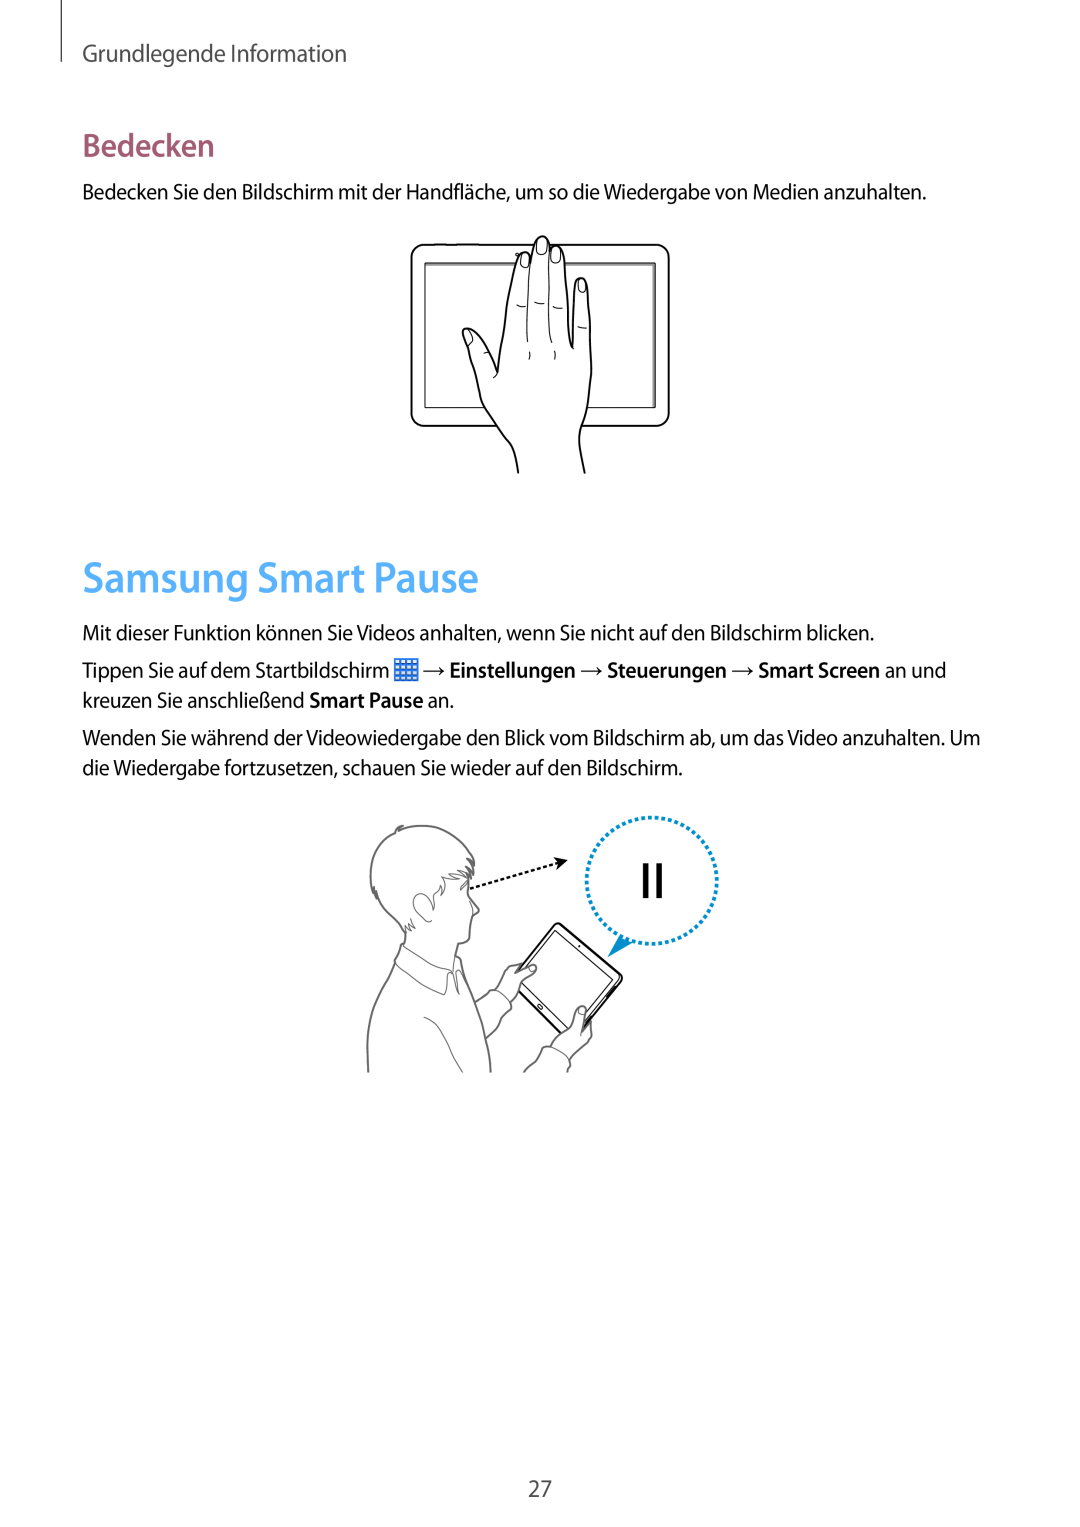 Samsung SM-P6050ZKASEB, SM-P6050ZKAITV, SM-P6050ZKEDBT manual Samsung Smart Pause, Bedecken, Grundlegende Information 